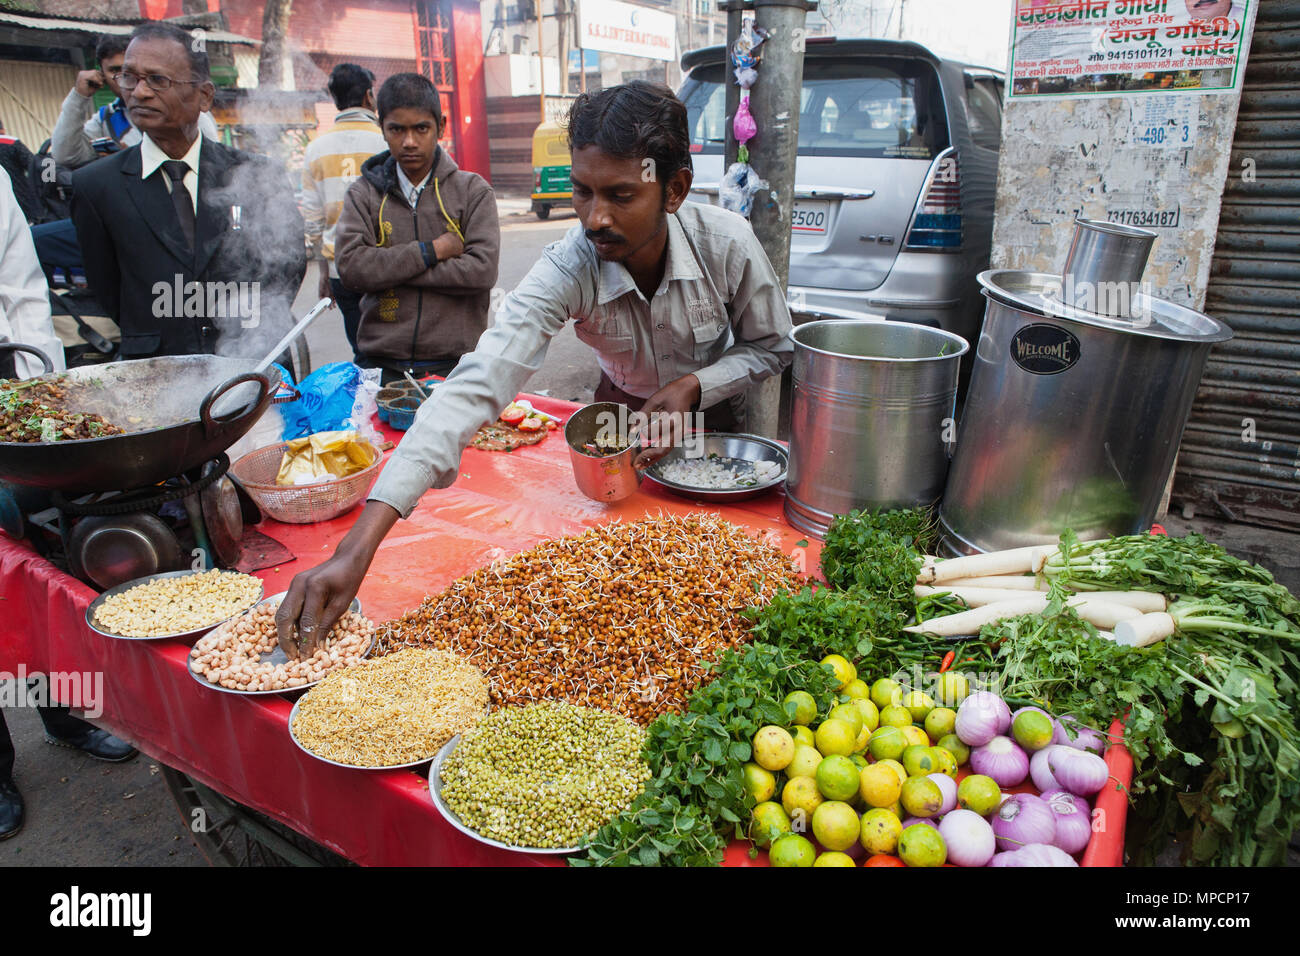 L'Inde, Uttar Pradesh, Lucknow, un vendeur prépare un casse-croûte végétarien y compris les haricots mungo à srouts son road-side stall. Banque D'Images